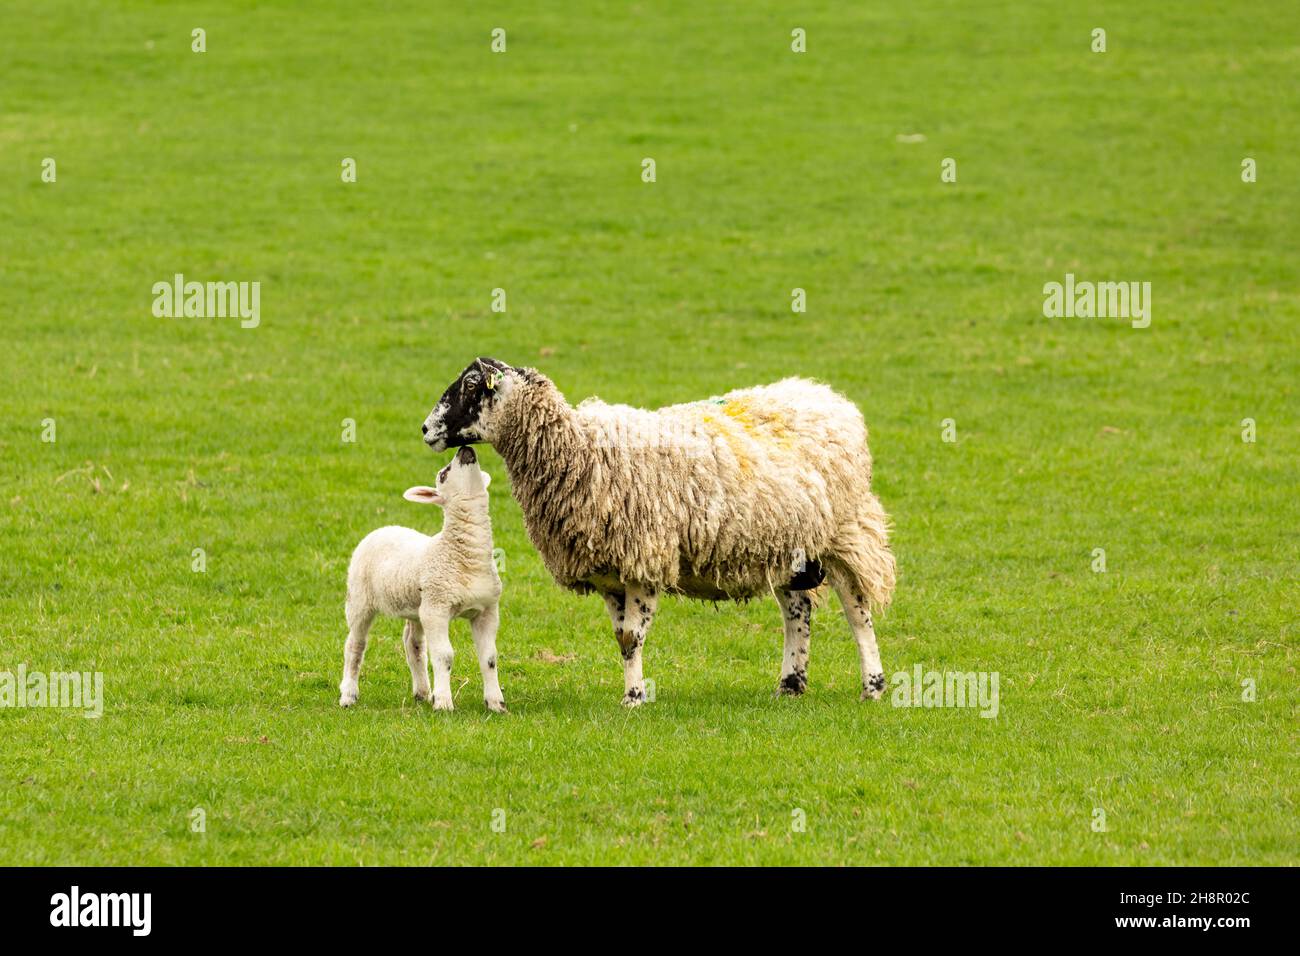 Swaledale mule ewe ou brebis femelle avec son jeune agneau la regardant.Concept: L'amour de la mère.Arrière-plan propre et vert.Espace pour la copie.Horizon Banque D'Images